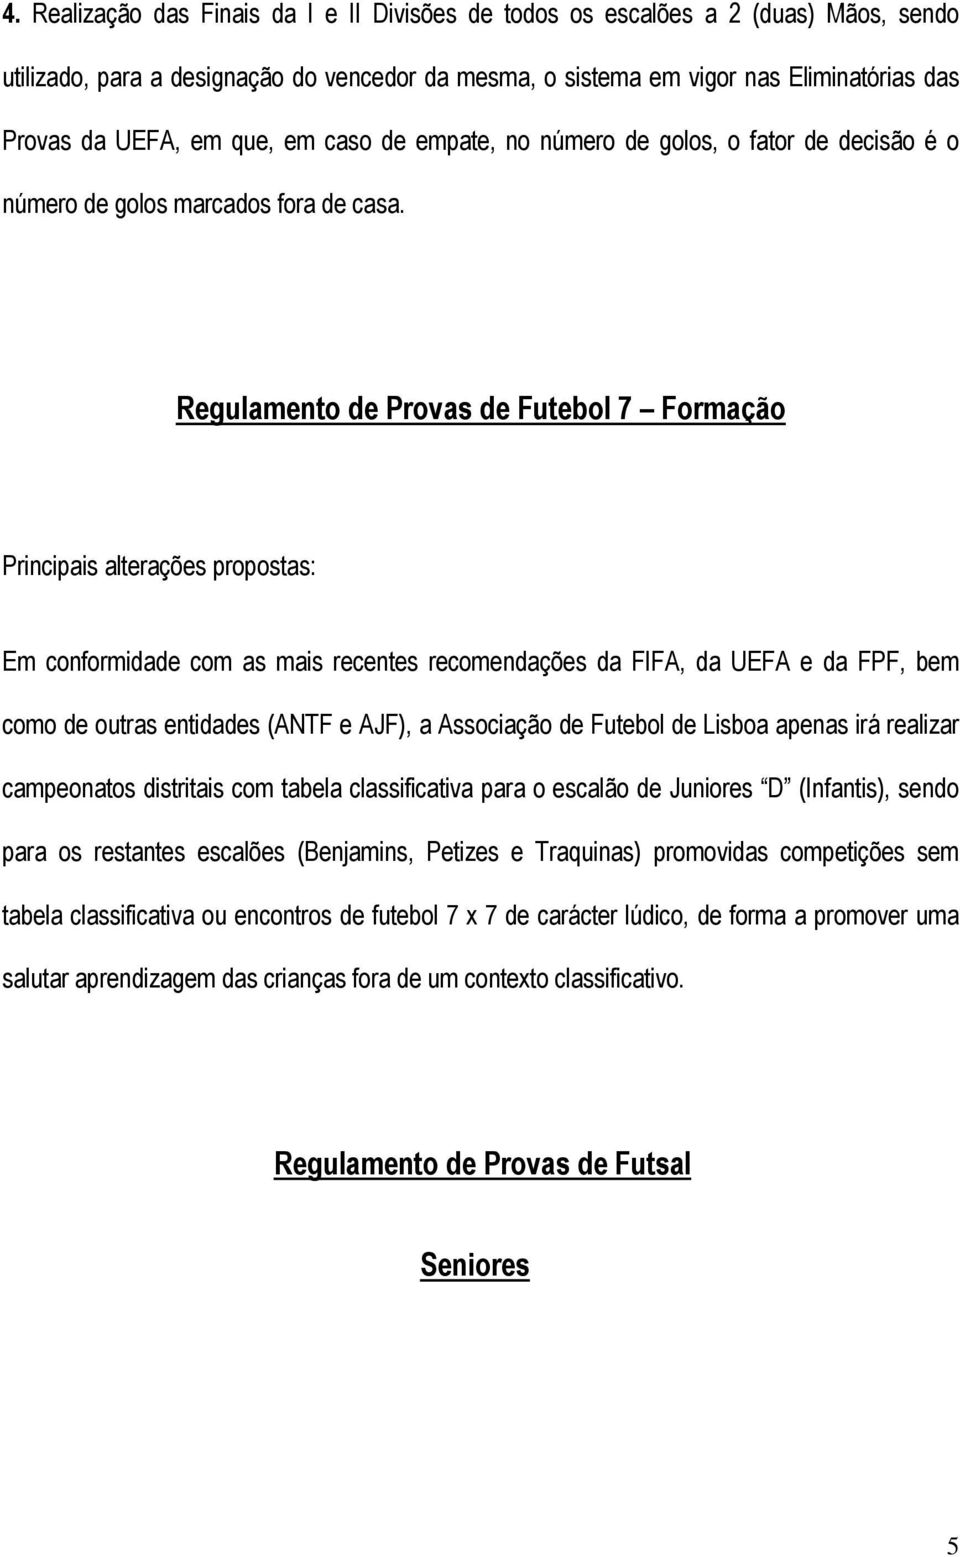 Regulamento de Provas de Futebol 7 Formação Principais alterações propostas: Em conformidade com as mais recentes recomendações da FIFA, da UEFA e da FPF, bem como de outras entidades (ANTF e AJF), a